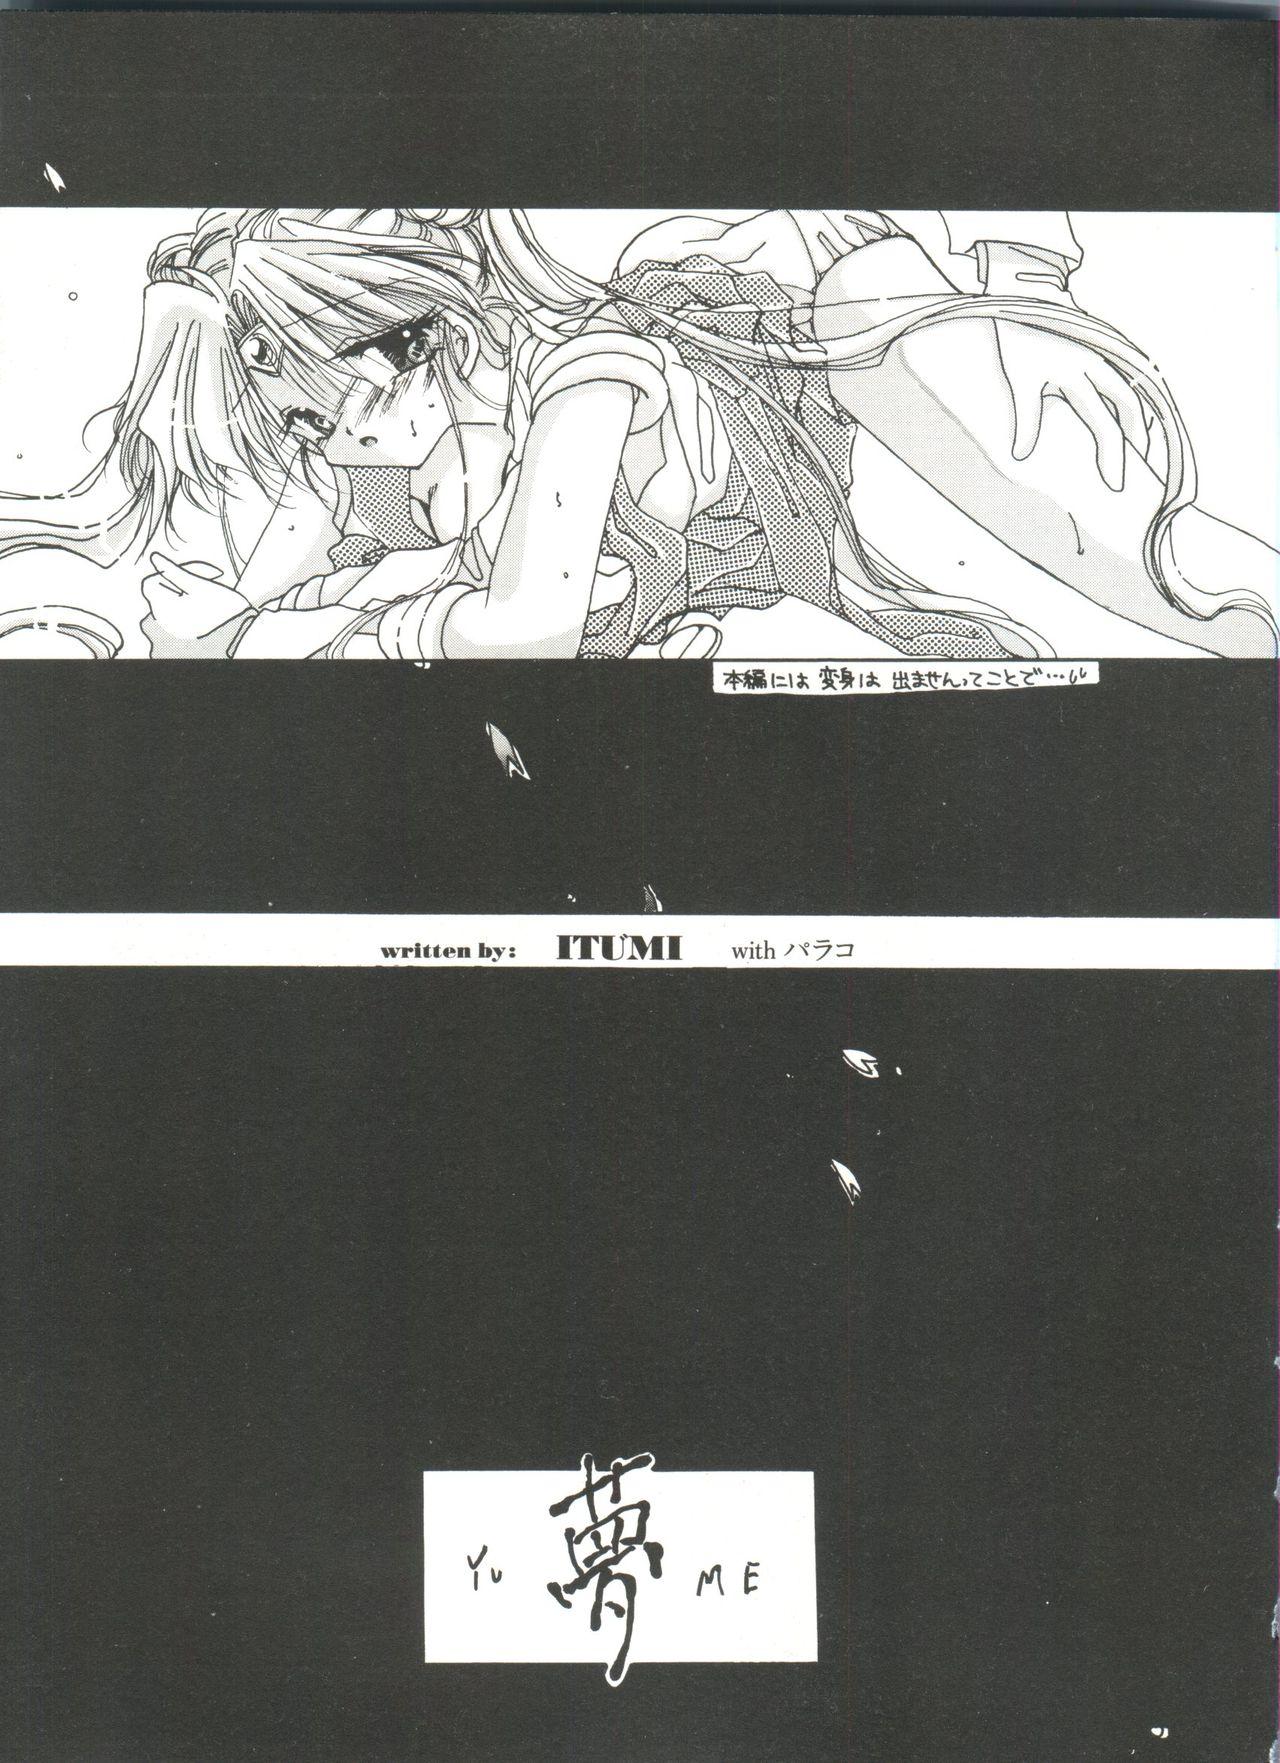 Bishoujo Doujinshi Anthology 10 - Moon Paradise 6 Tsuki no Rakuen 9